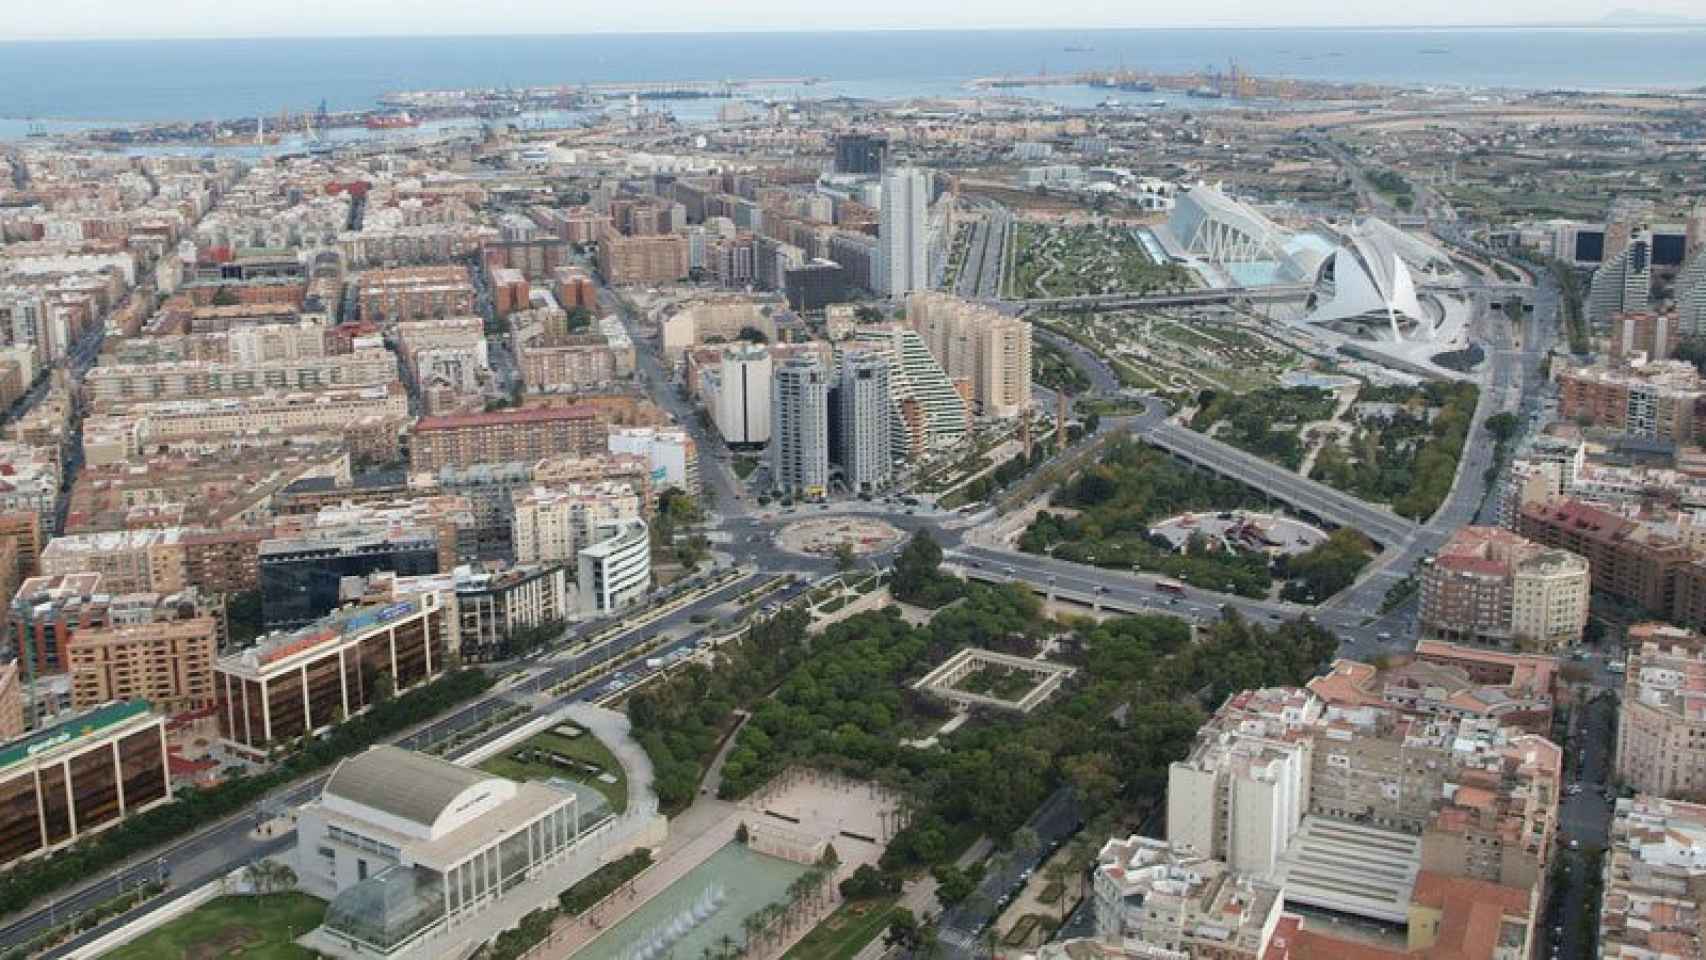 Vista aérea de la ciudad de Valencia.